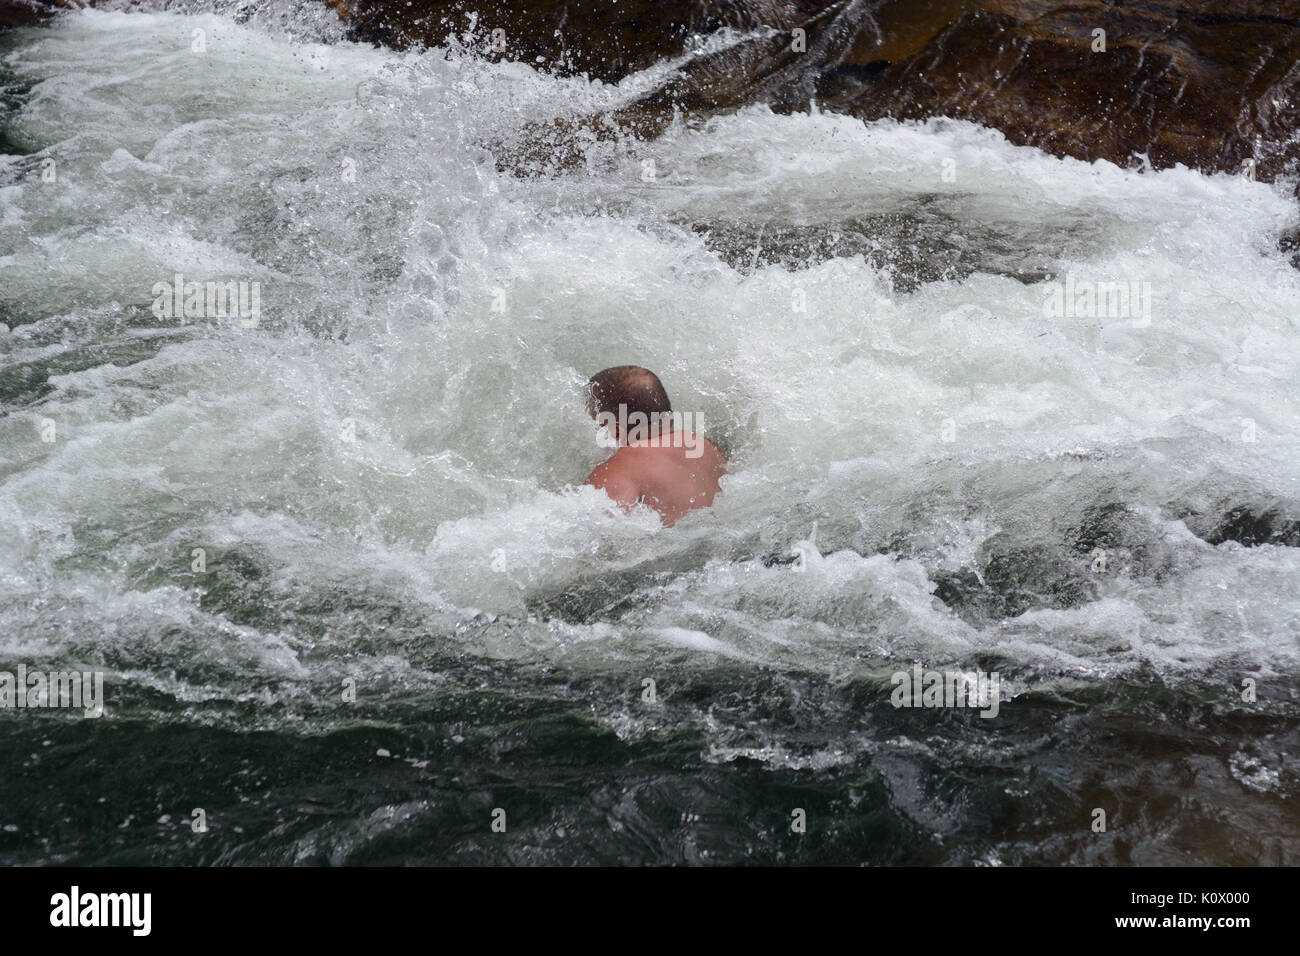 L'homme presque complètement submergée dans rapids blancs de l'eau après la plongée dans l'eau Banque D'Images